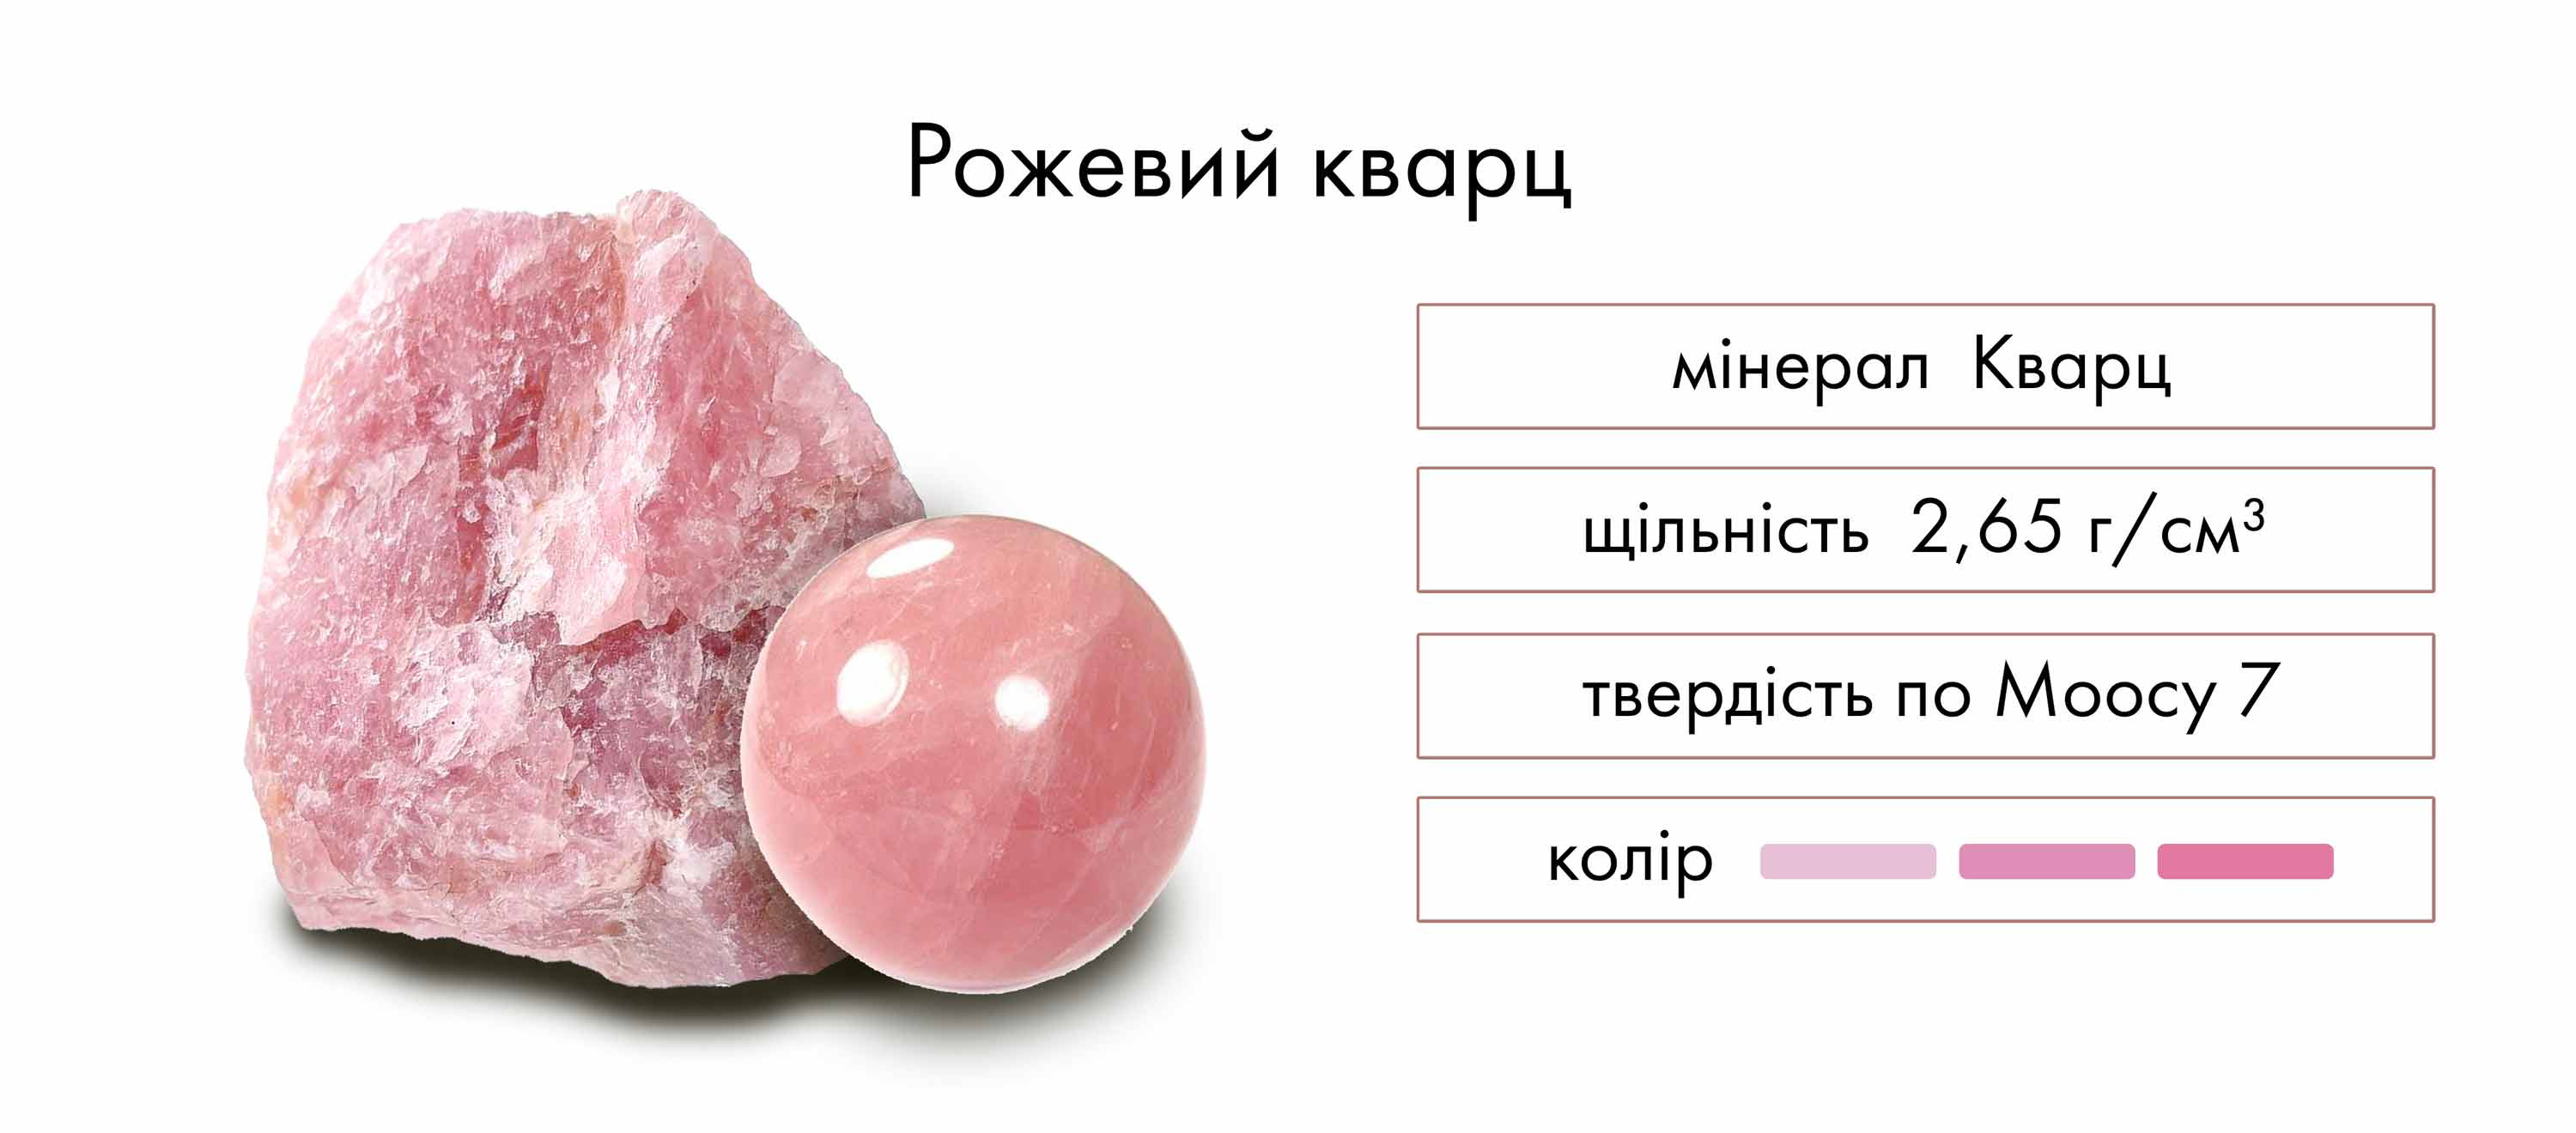 Історія походження каменя рожевий кварц